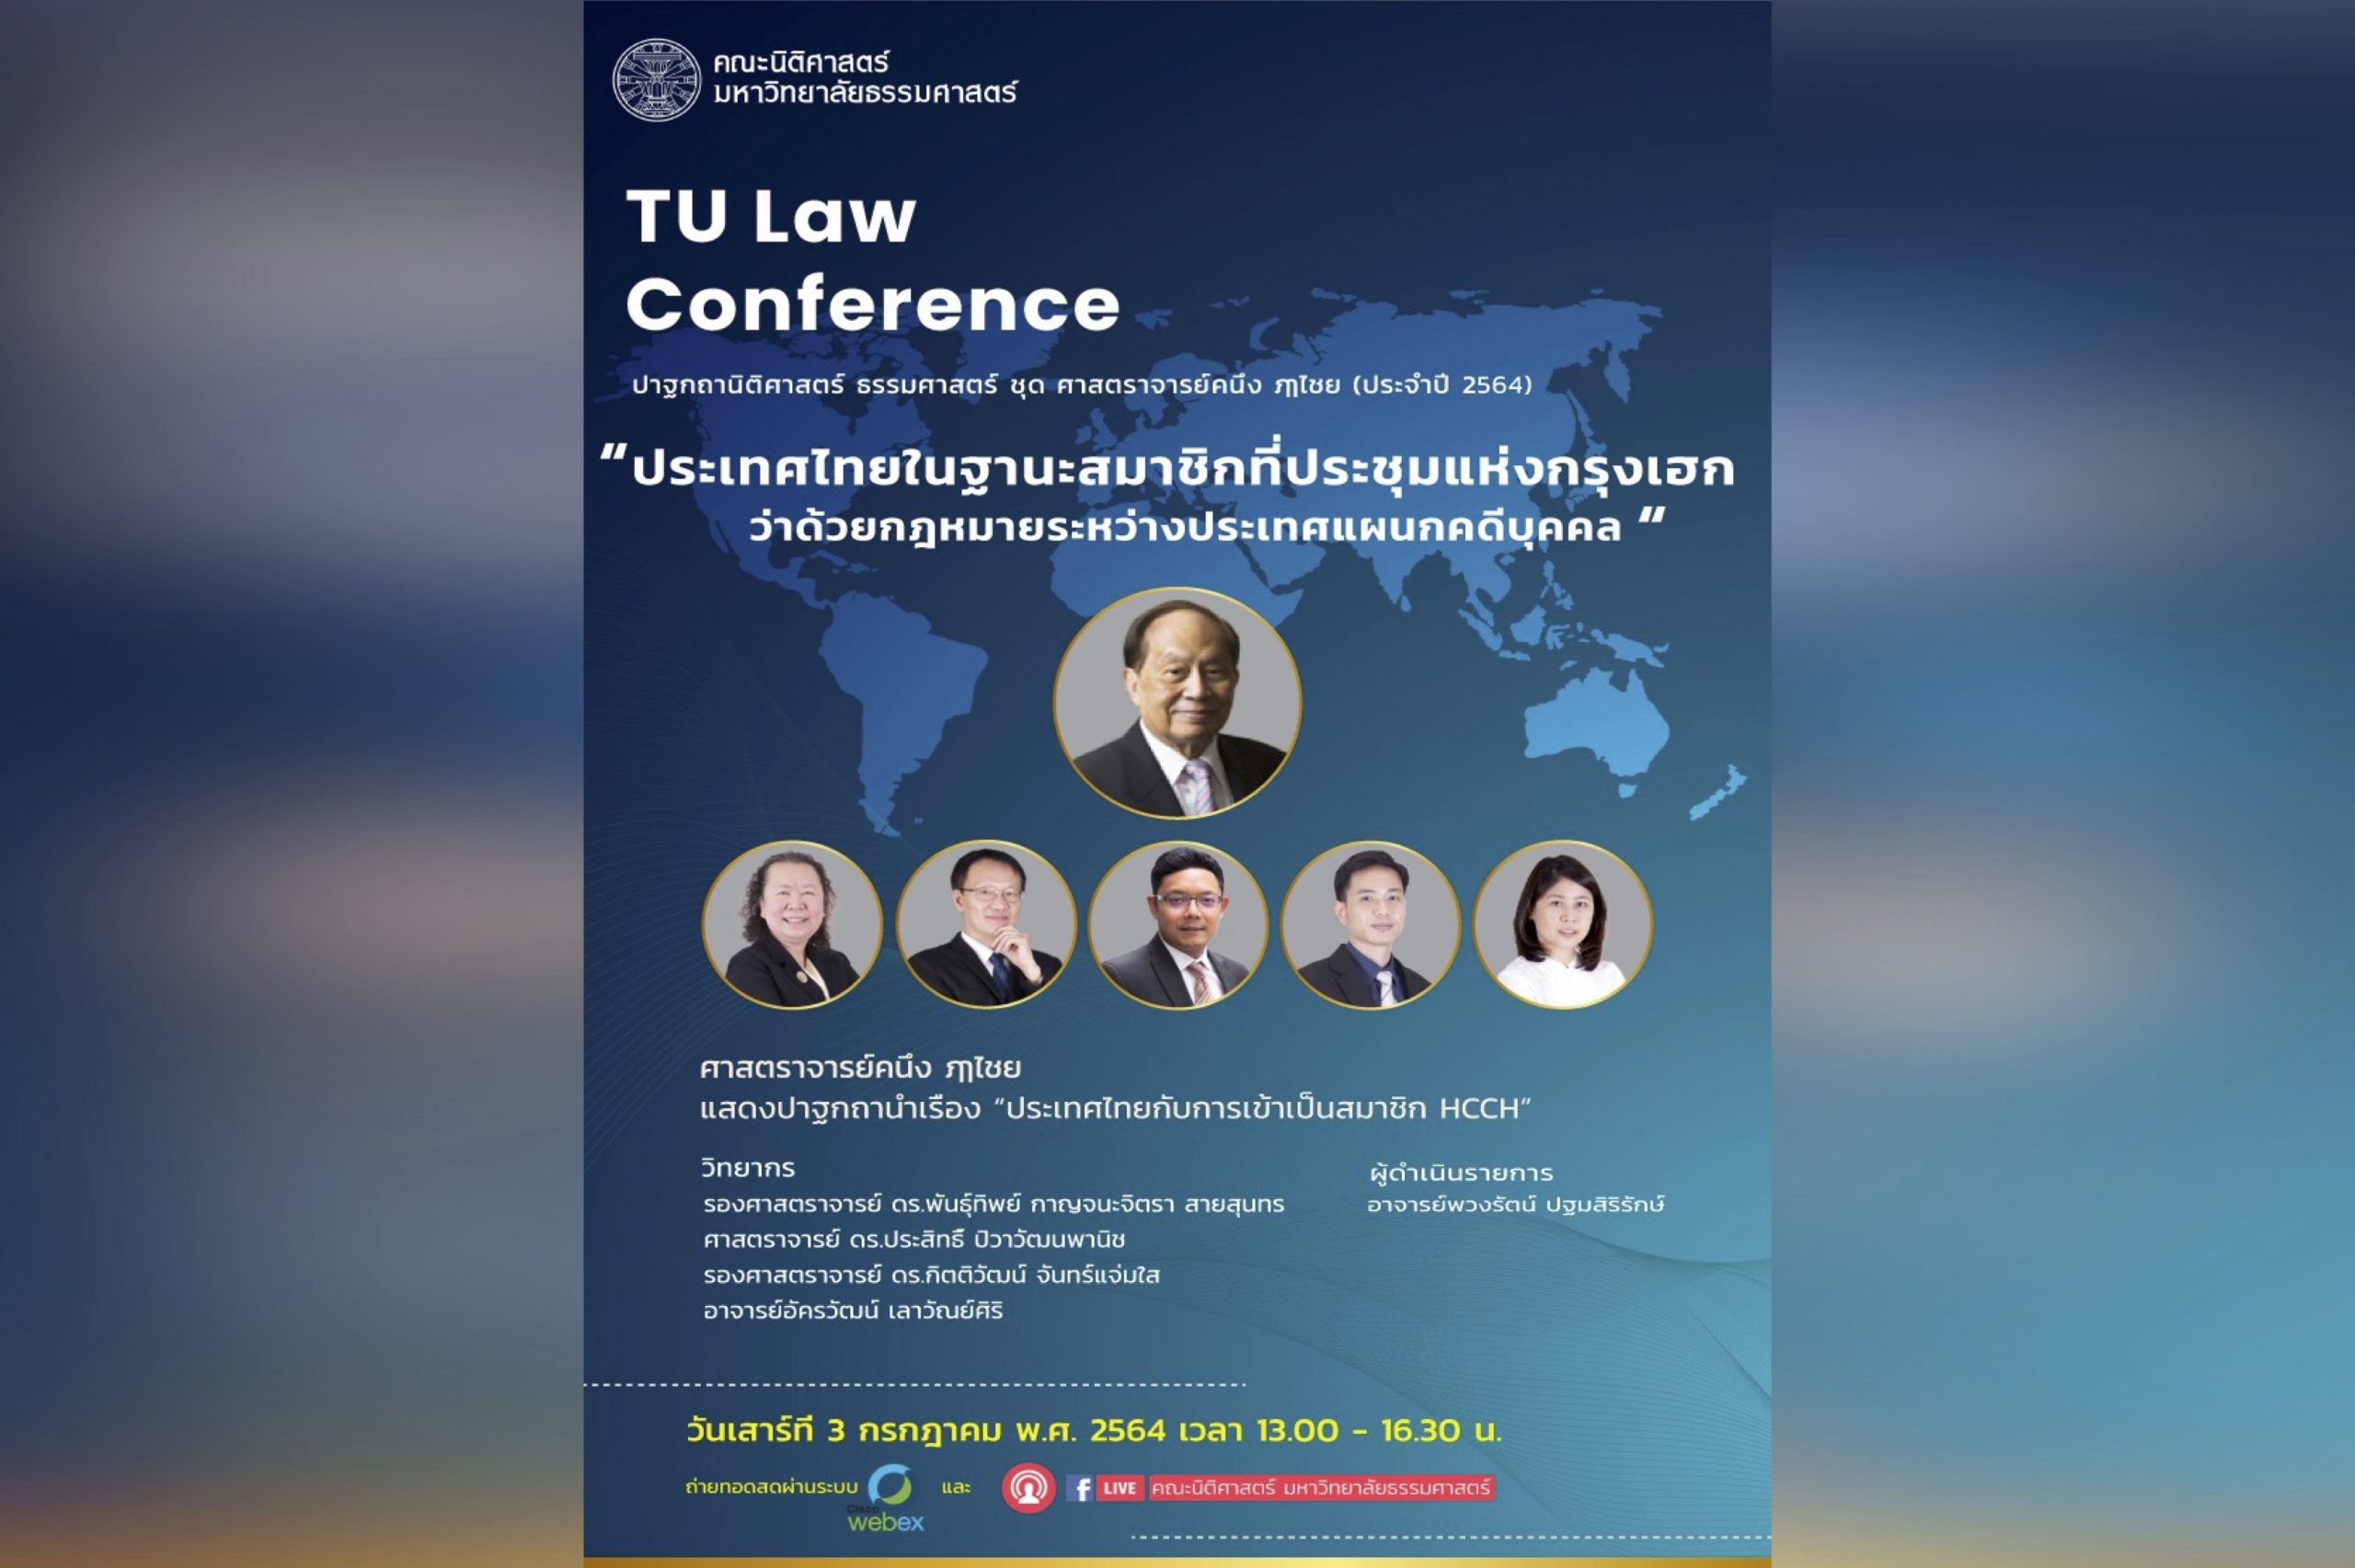 สรุปสาระสำคัญจากงานวิชาการรำลึก TU Law Conference ปาฐกถานิติศาสตร์ ธรรมศาสตร์ ชุด ศาสตราจารย์ คนึง ฦๅไชย (ประจำปี 2564) หัวข้อ “ประเทศไทยในฐานะสมาชิกที่ประชุมแห่งกรุงเฮกว่าด้วยกฎหมายระหว่างประเทศแผนกคดีบุคคล”